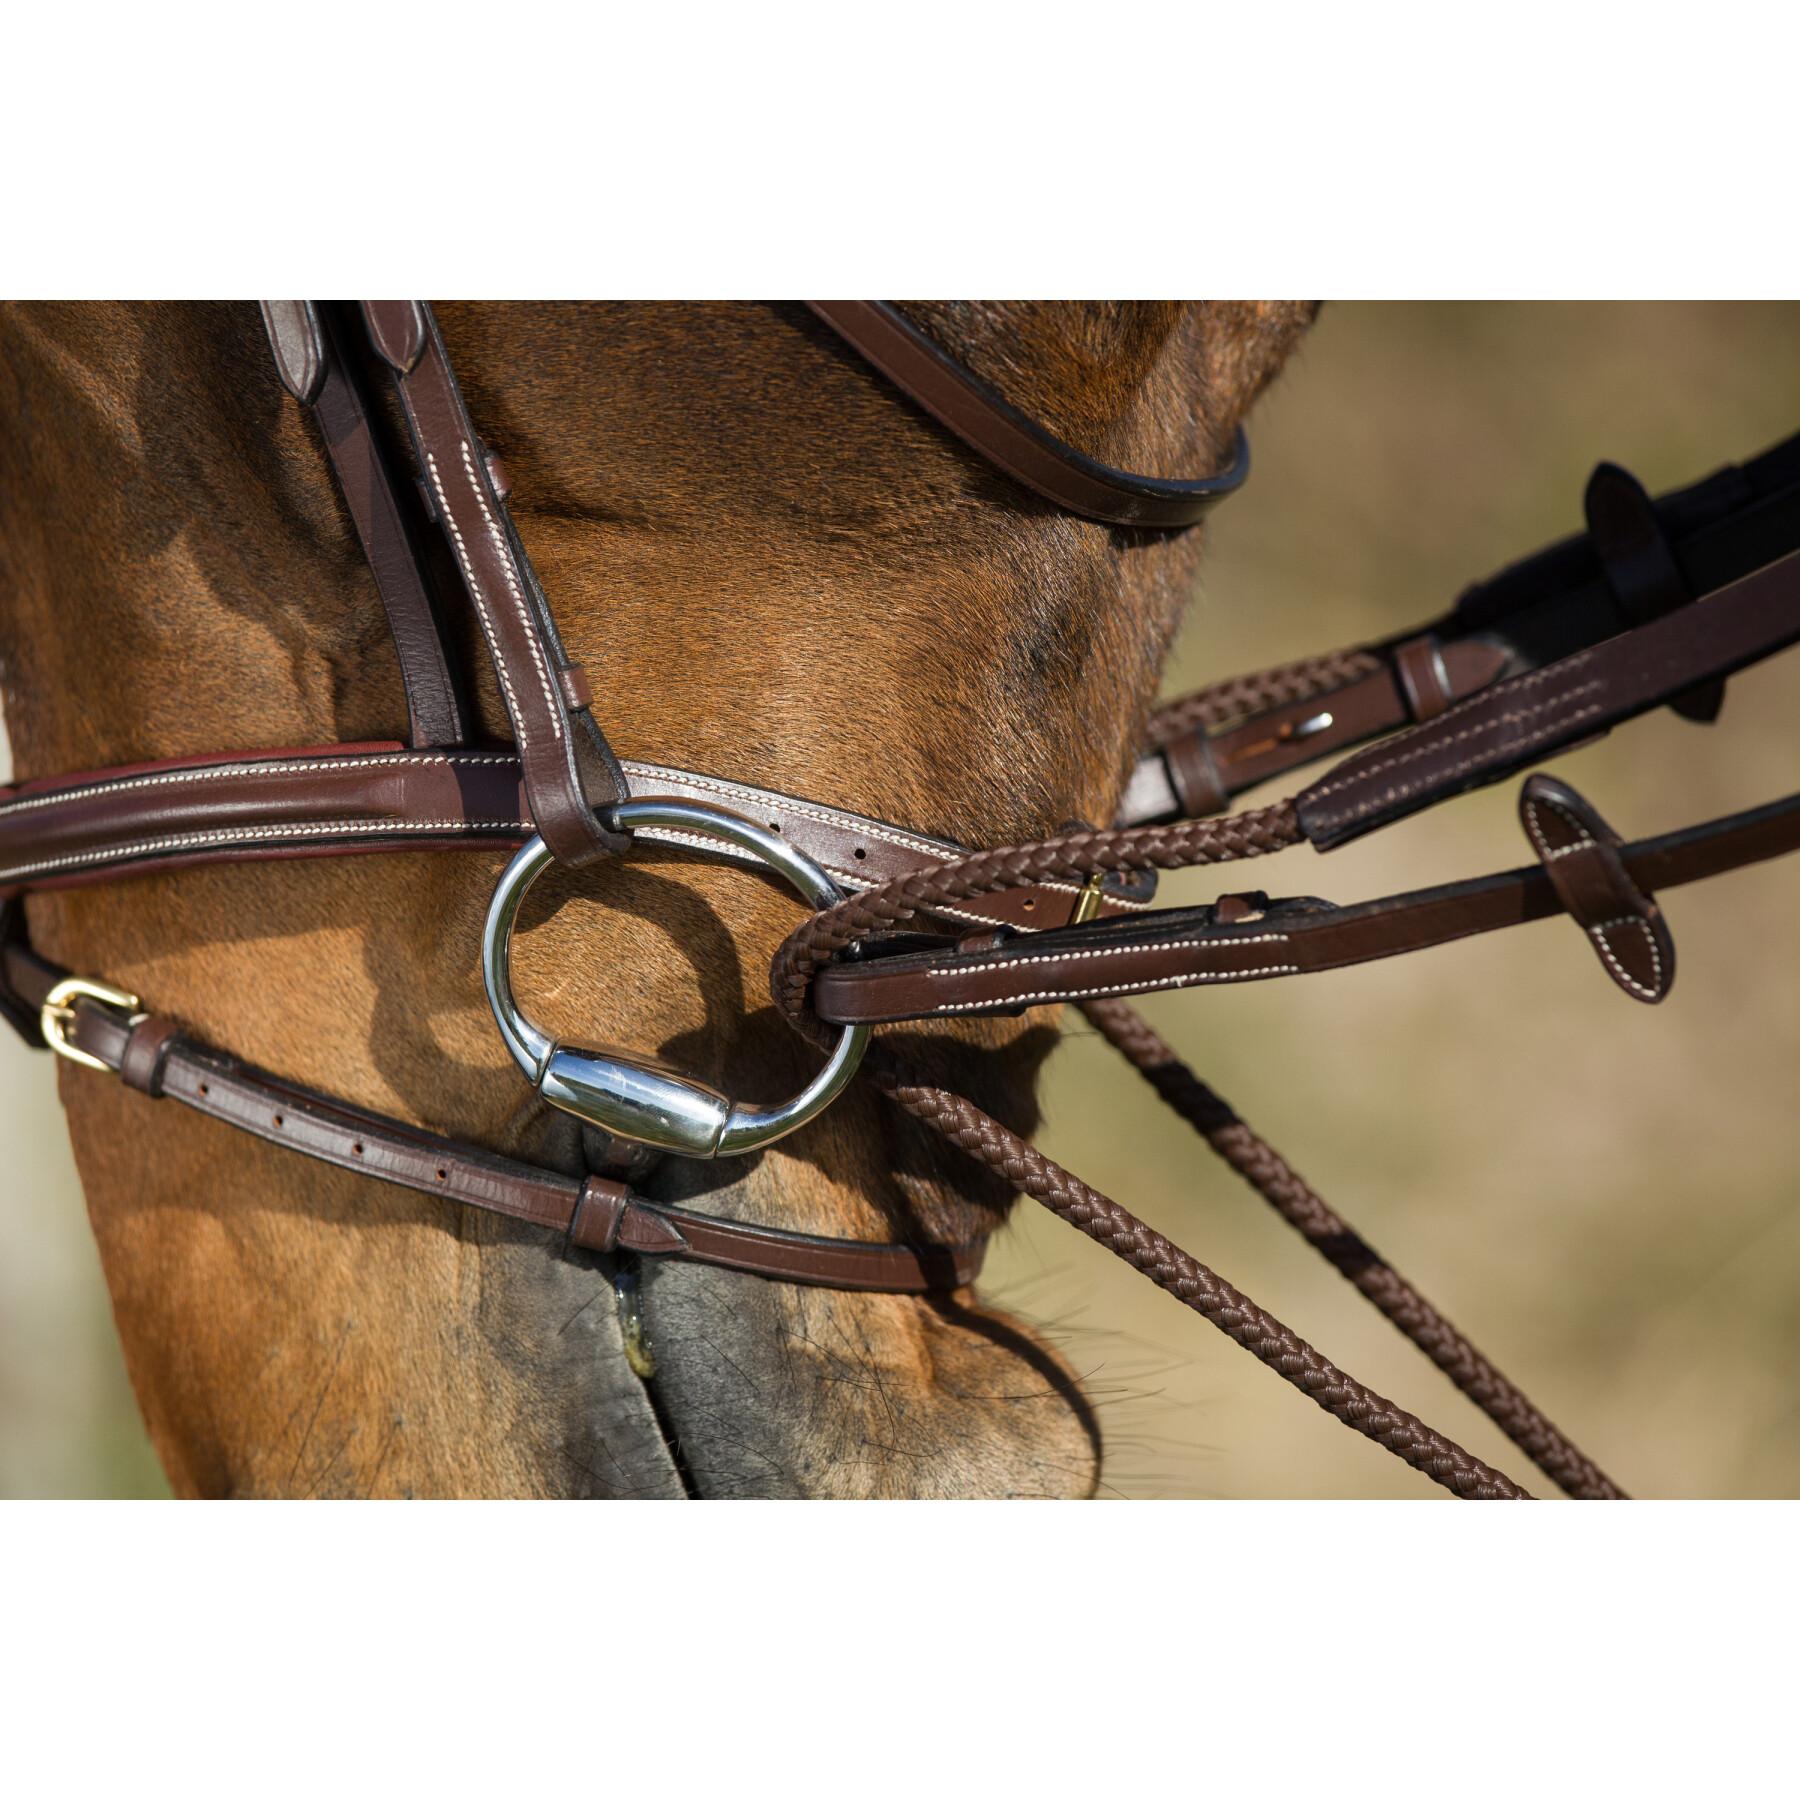 Riendas de equitación alemanas de cuero + cuerda HFI